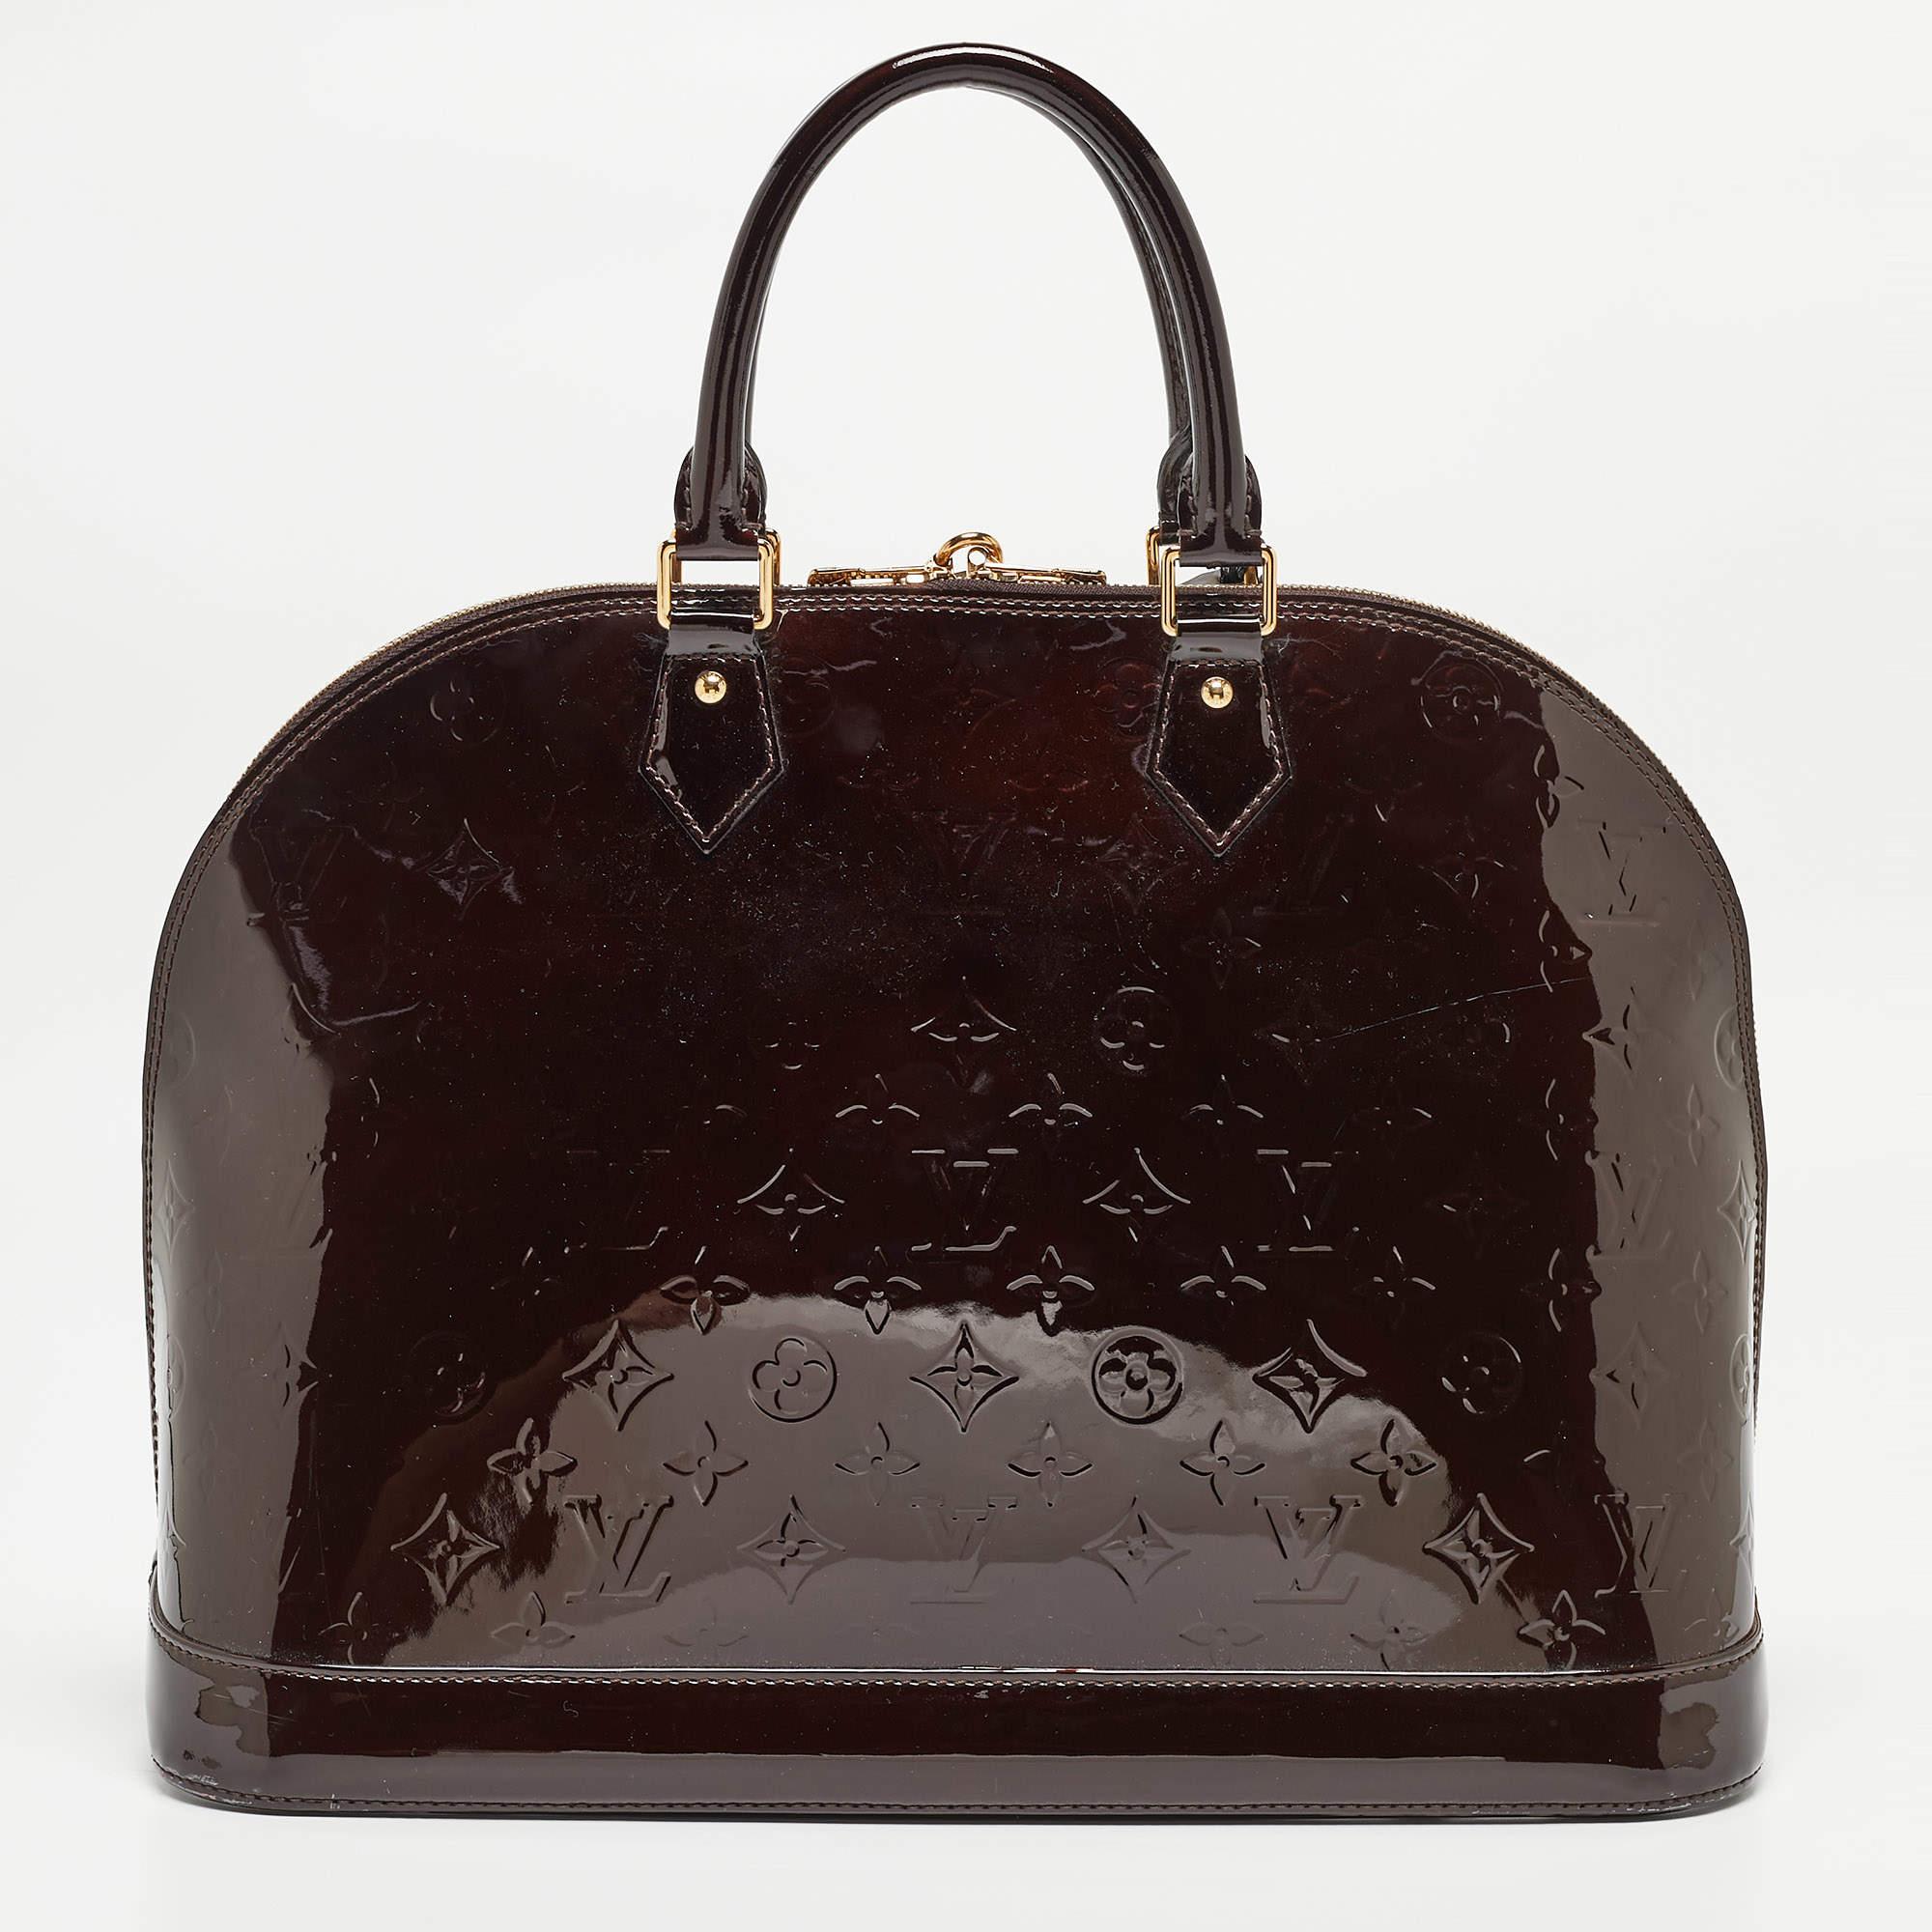 Le sac Alma GM de Louis Vuitton est un gage d'élégance. Réalisée avec une attention méticuleuse aux détails, sa riche couleur amarante et son motif monogramme emblématique exsudent une allure intemporelle. Son intérieur spacieux et sa silhouette